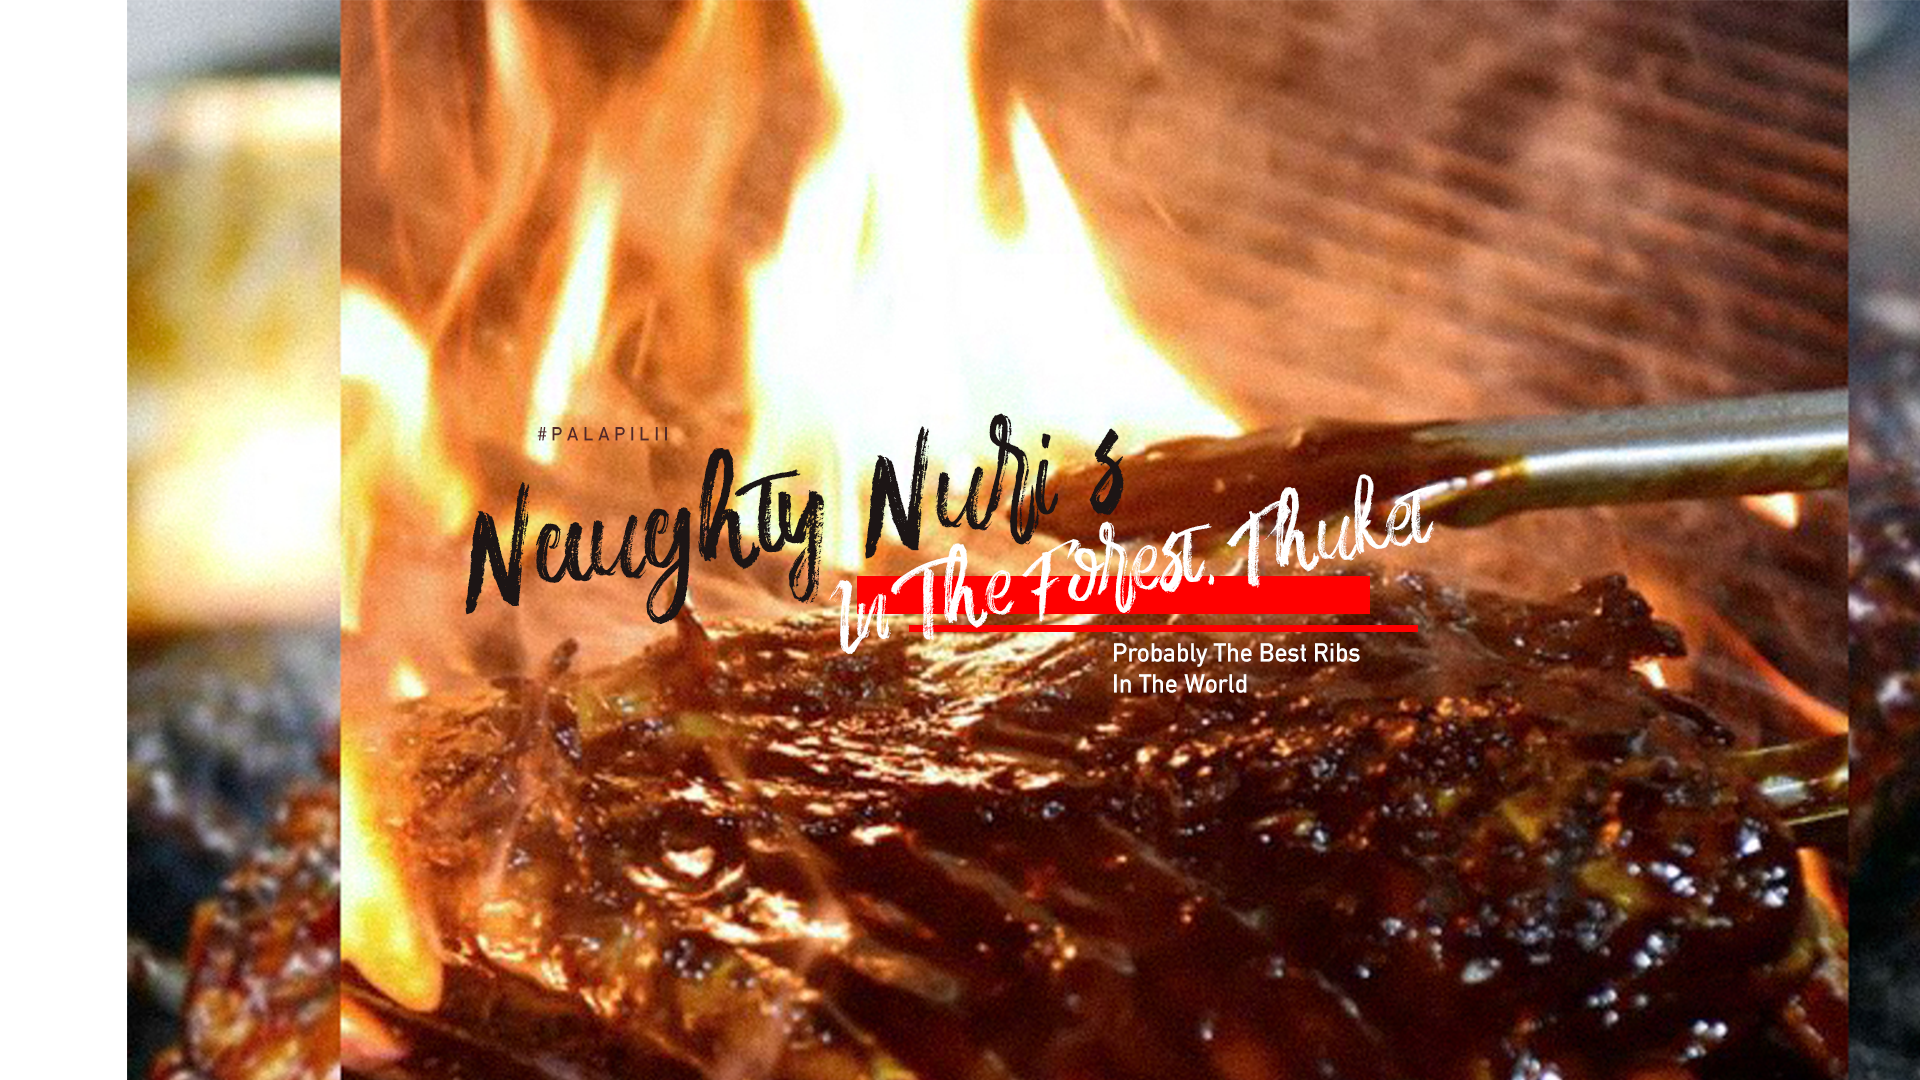 เพราะที่นี่เป็นเจ้าเดียวในประเทศ | Naughty Nuri’s มาเปิดที่ไทยแล้วววววว!!!